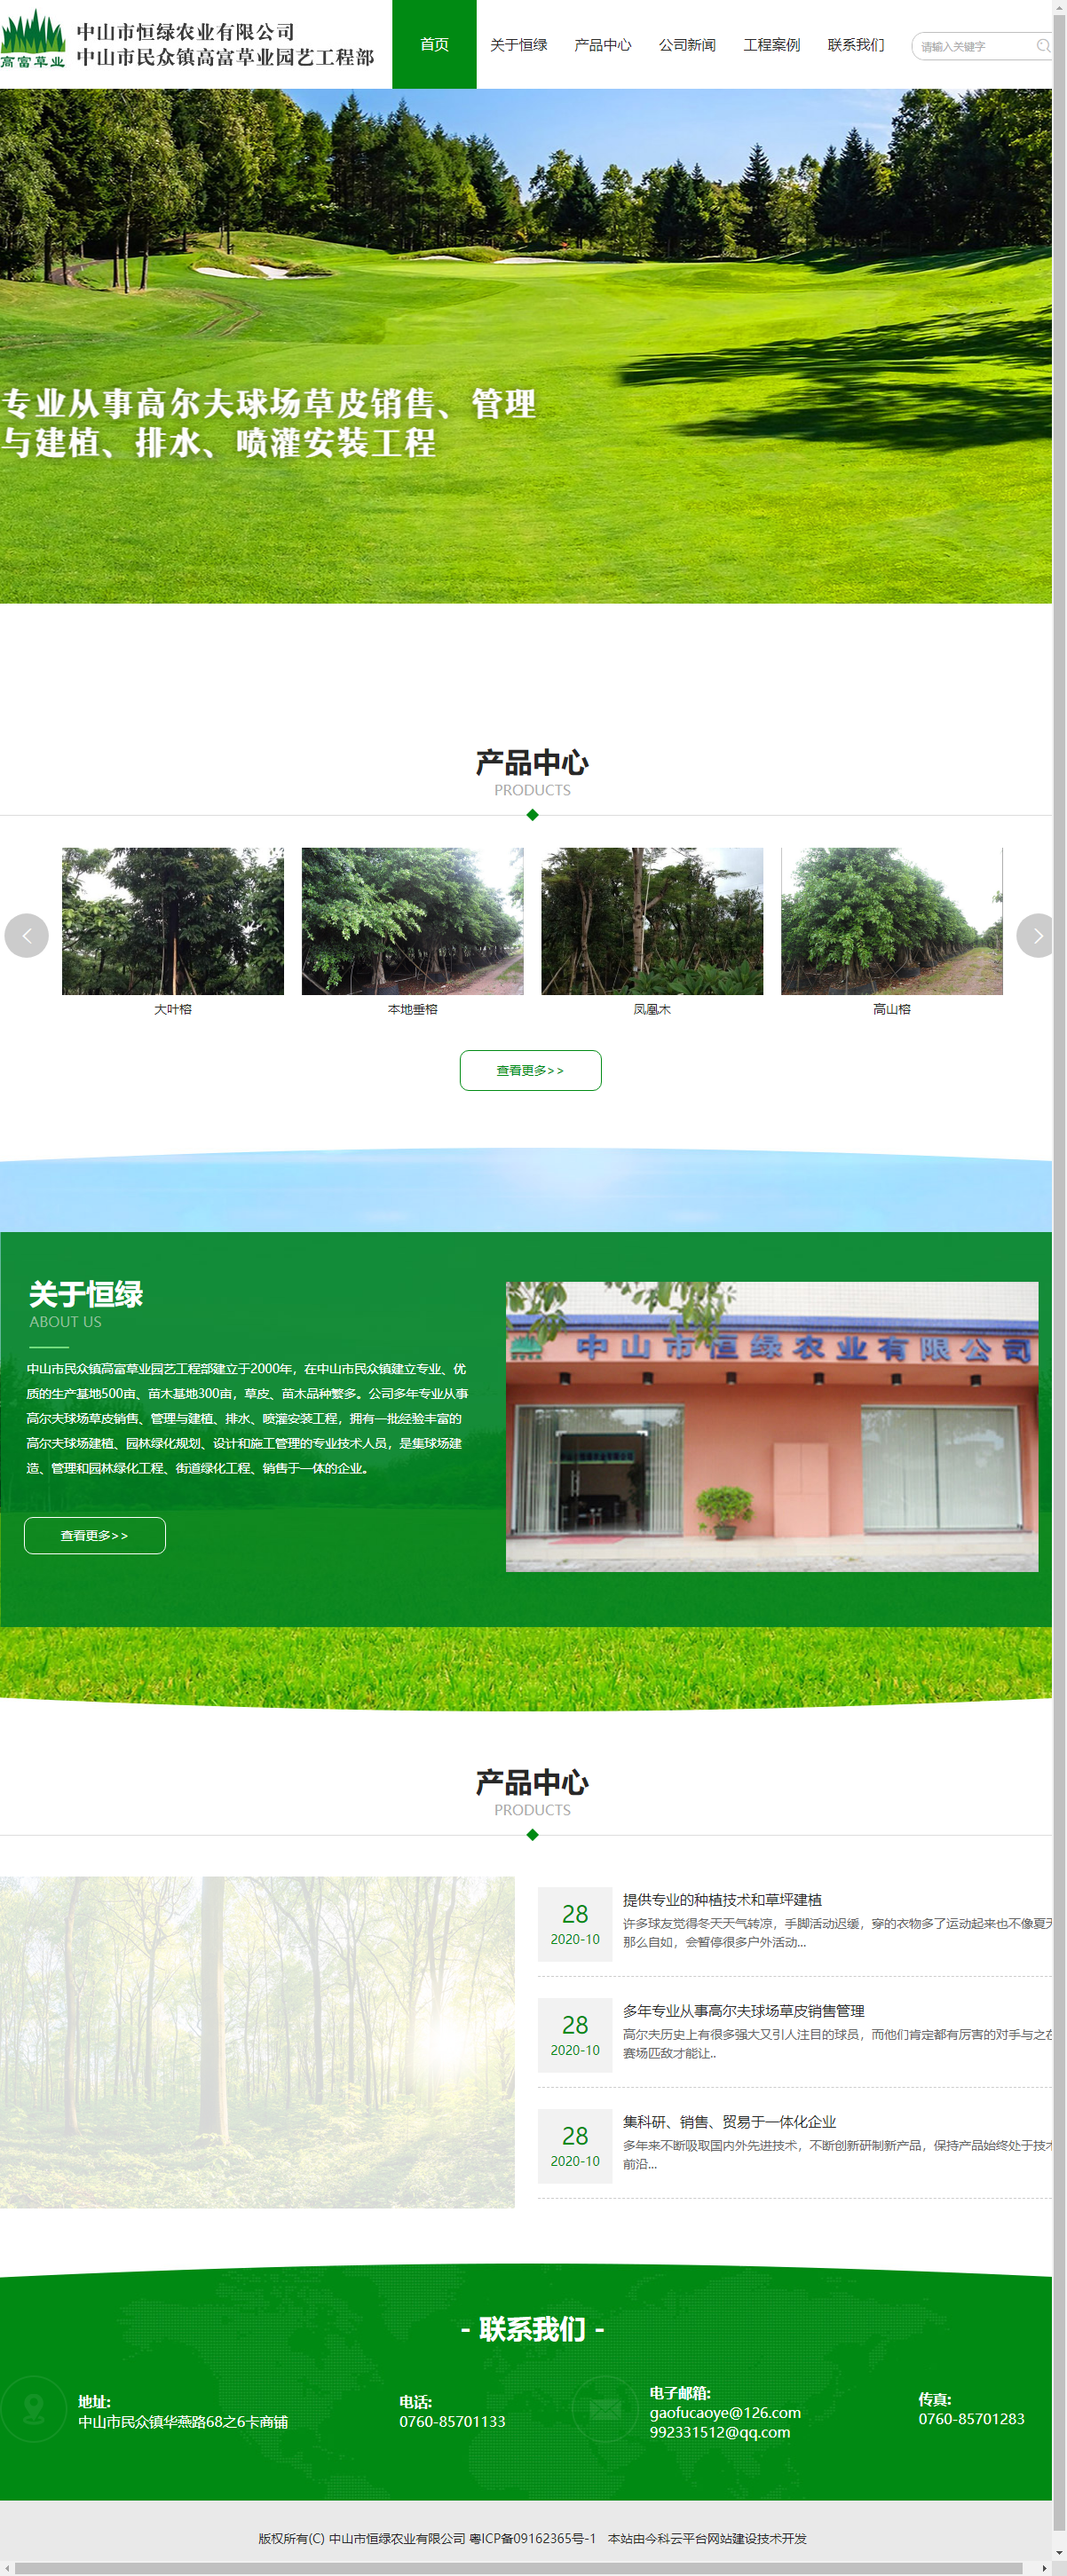 中山市恒绿农业有限公司网站案例